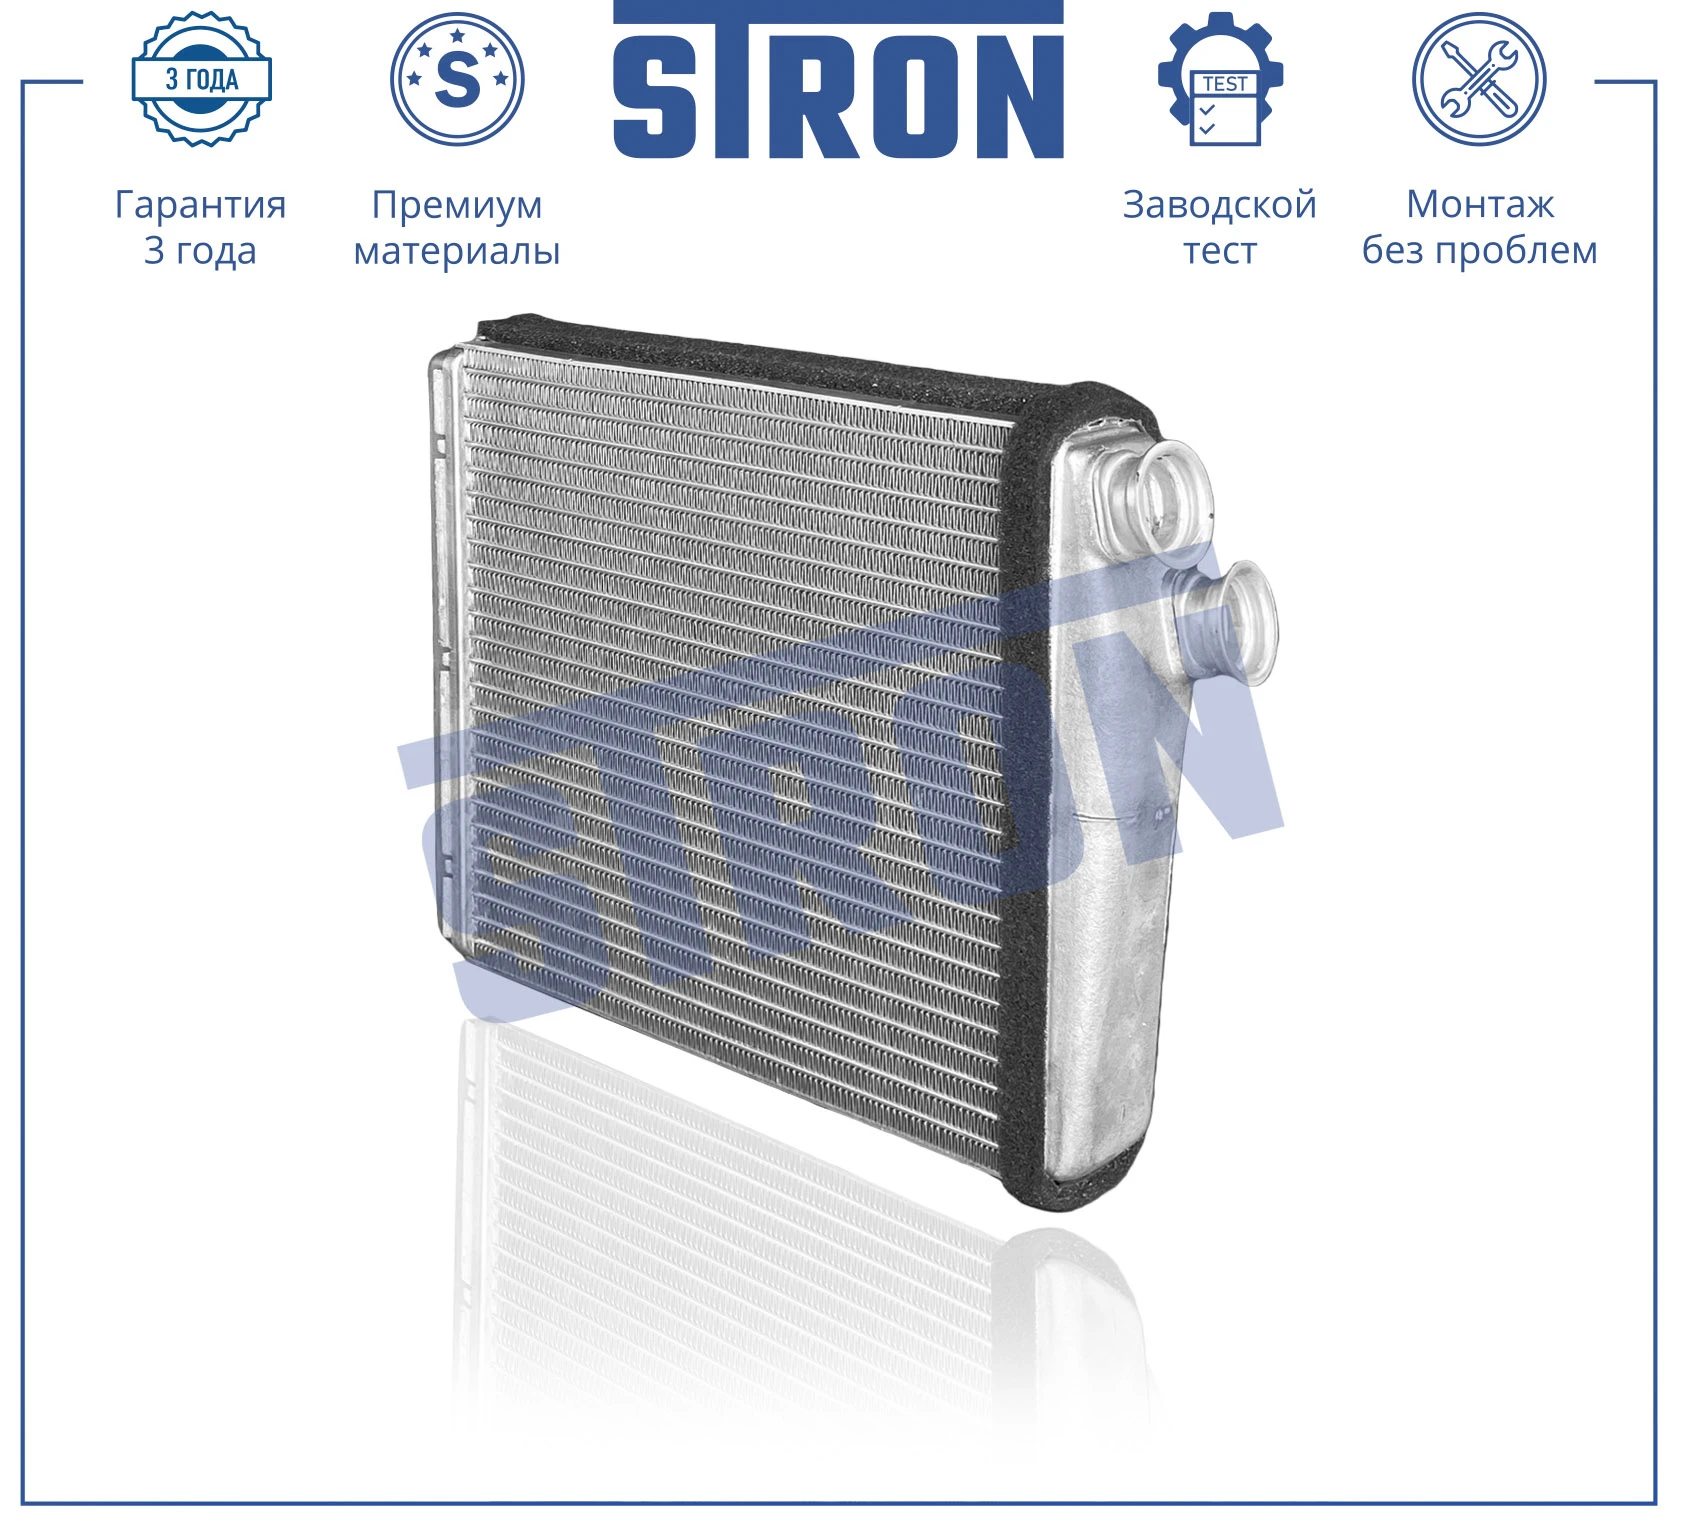 STH0043 STRON Радиатор отопителя (гарантия 3 года, увеличенный ресурс) (фото 2)